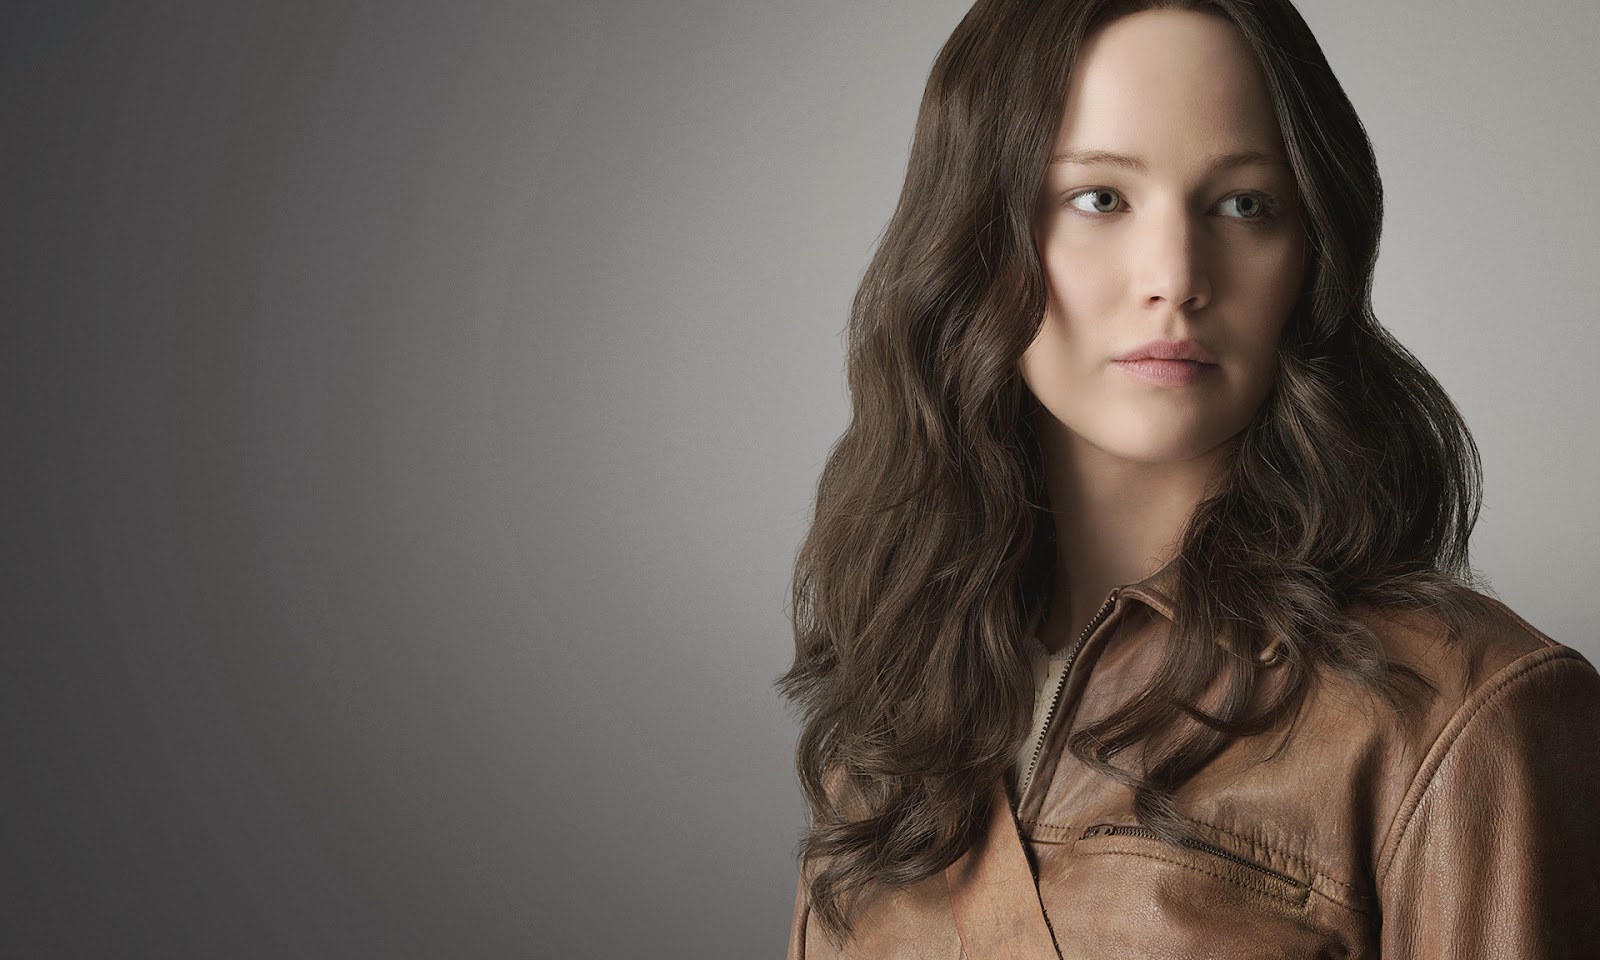  Katniss Everdeen Hunger Games Mockingjay Part 1 HD Wallpaper 1024x614 1600x960